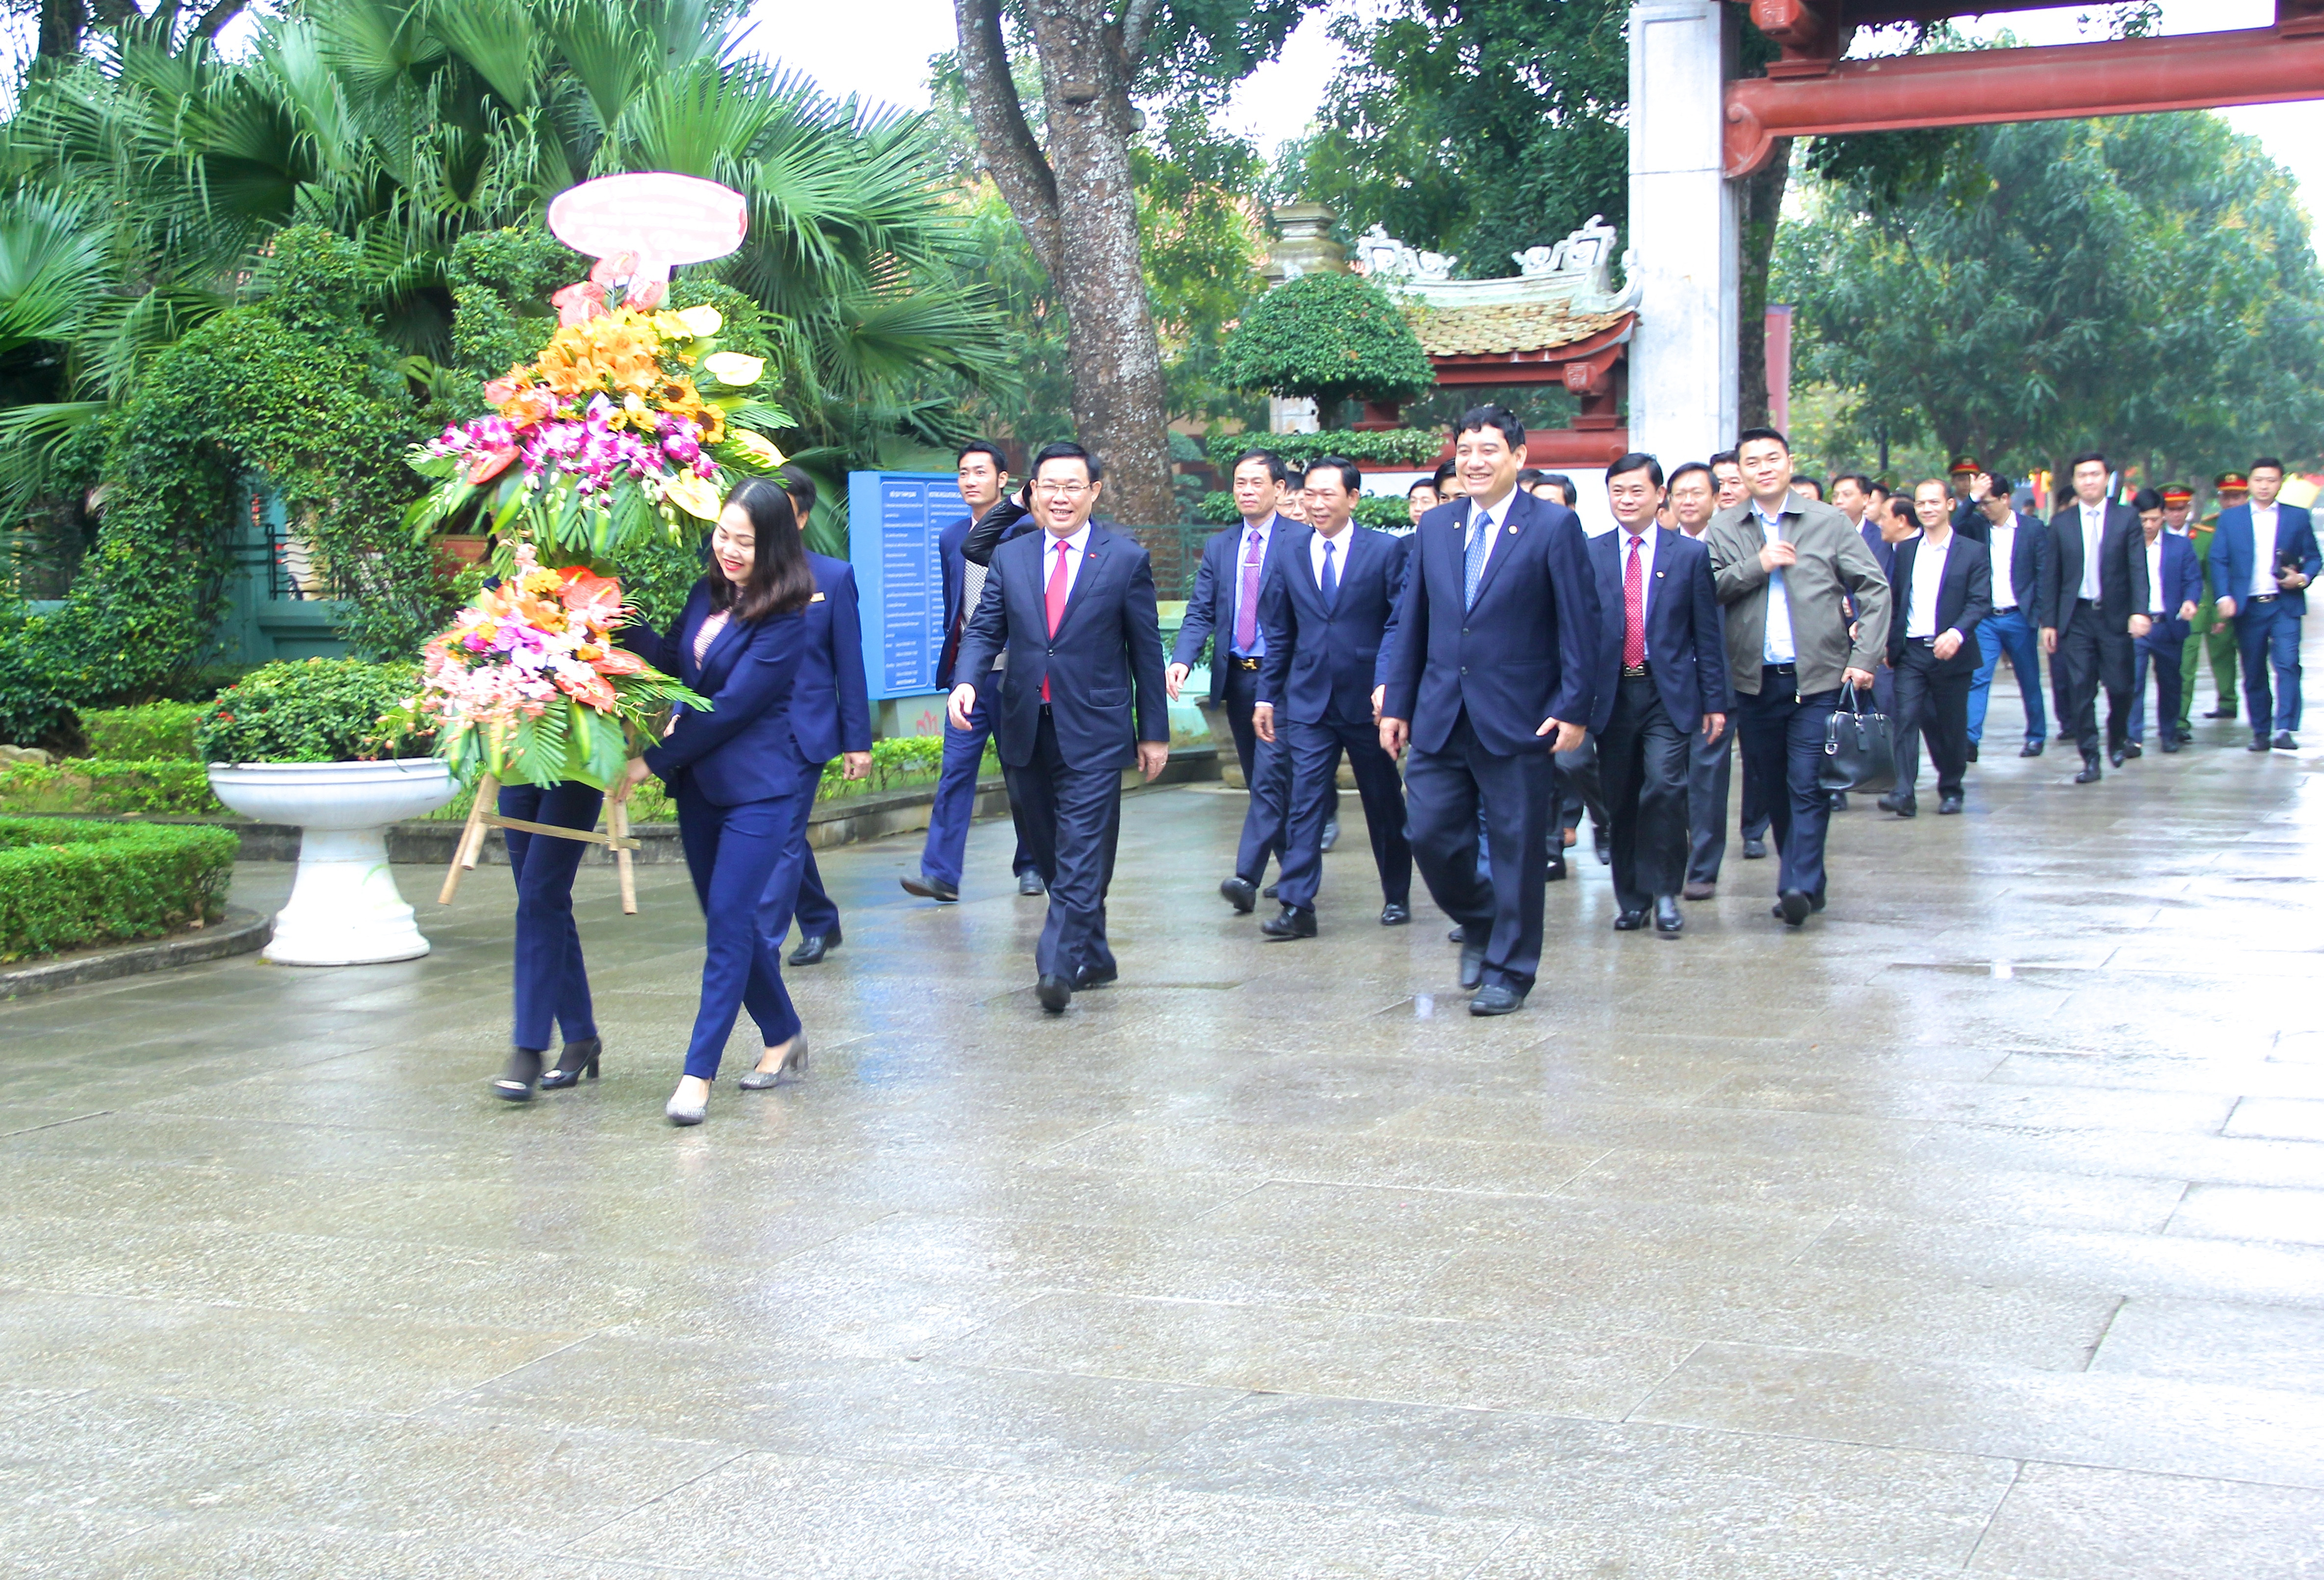 Phó Thủ tướng Vương Đình Huệ cùng đoàn lãnh đạo dâng hoa tại Khu di tích Kim Liên. Ảnh: Mỹ Nga. 